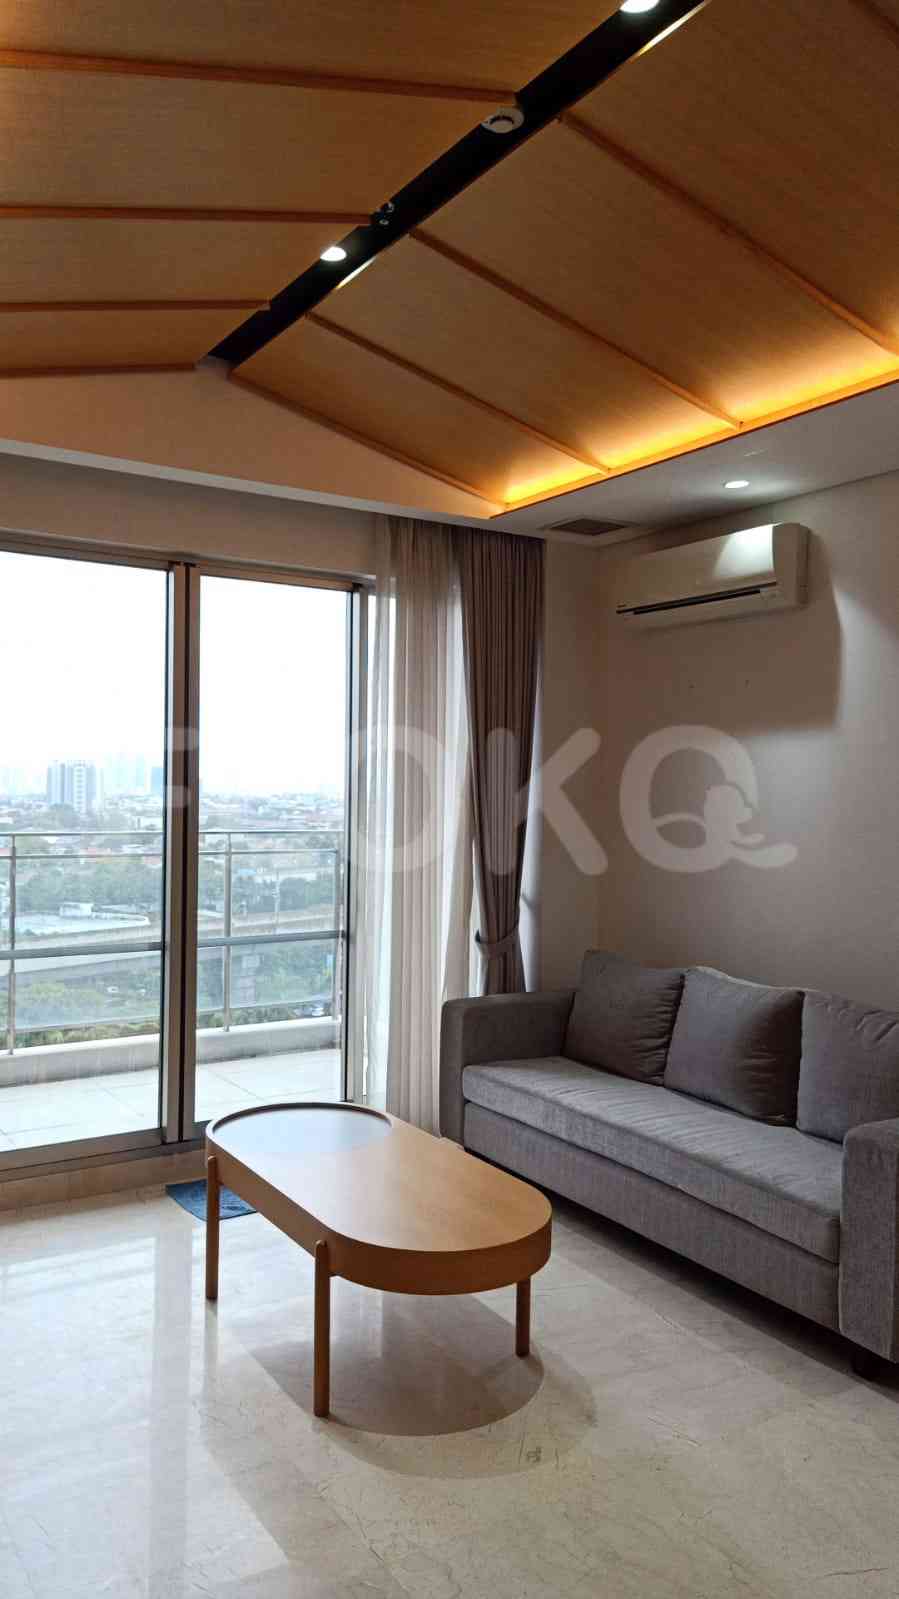 2 Bedroom on 12th Floor for Rent in Apartemen Branz Simatupang - ftbeee 4